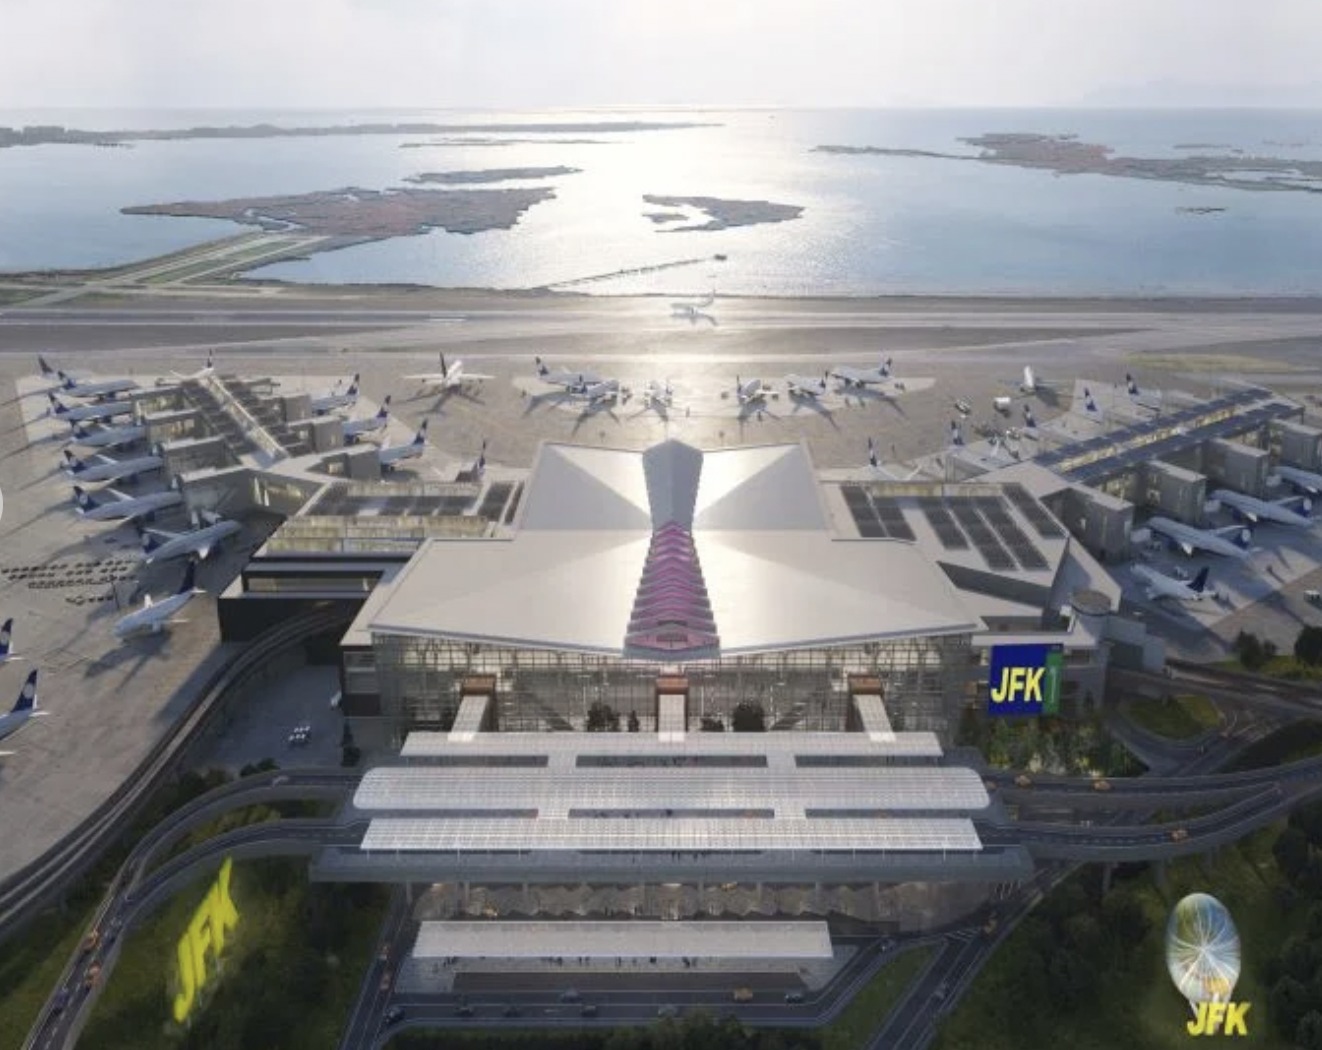 Świat, LOT będzie współgospodarzem nowego Terminala One na lotnisku JFK